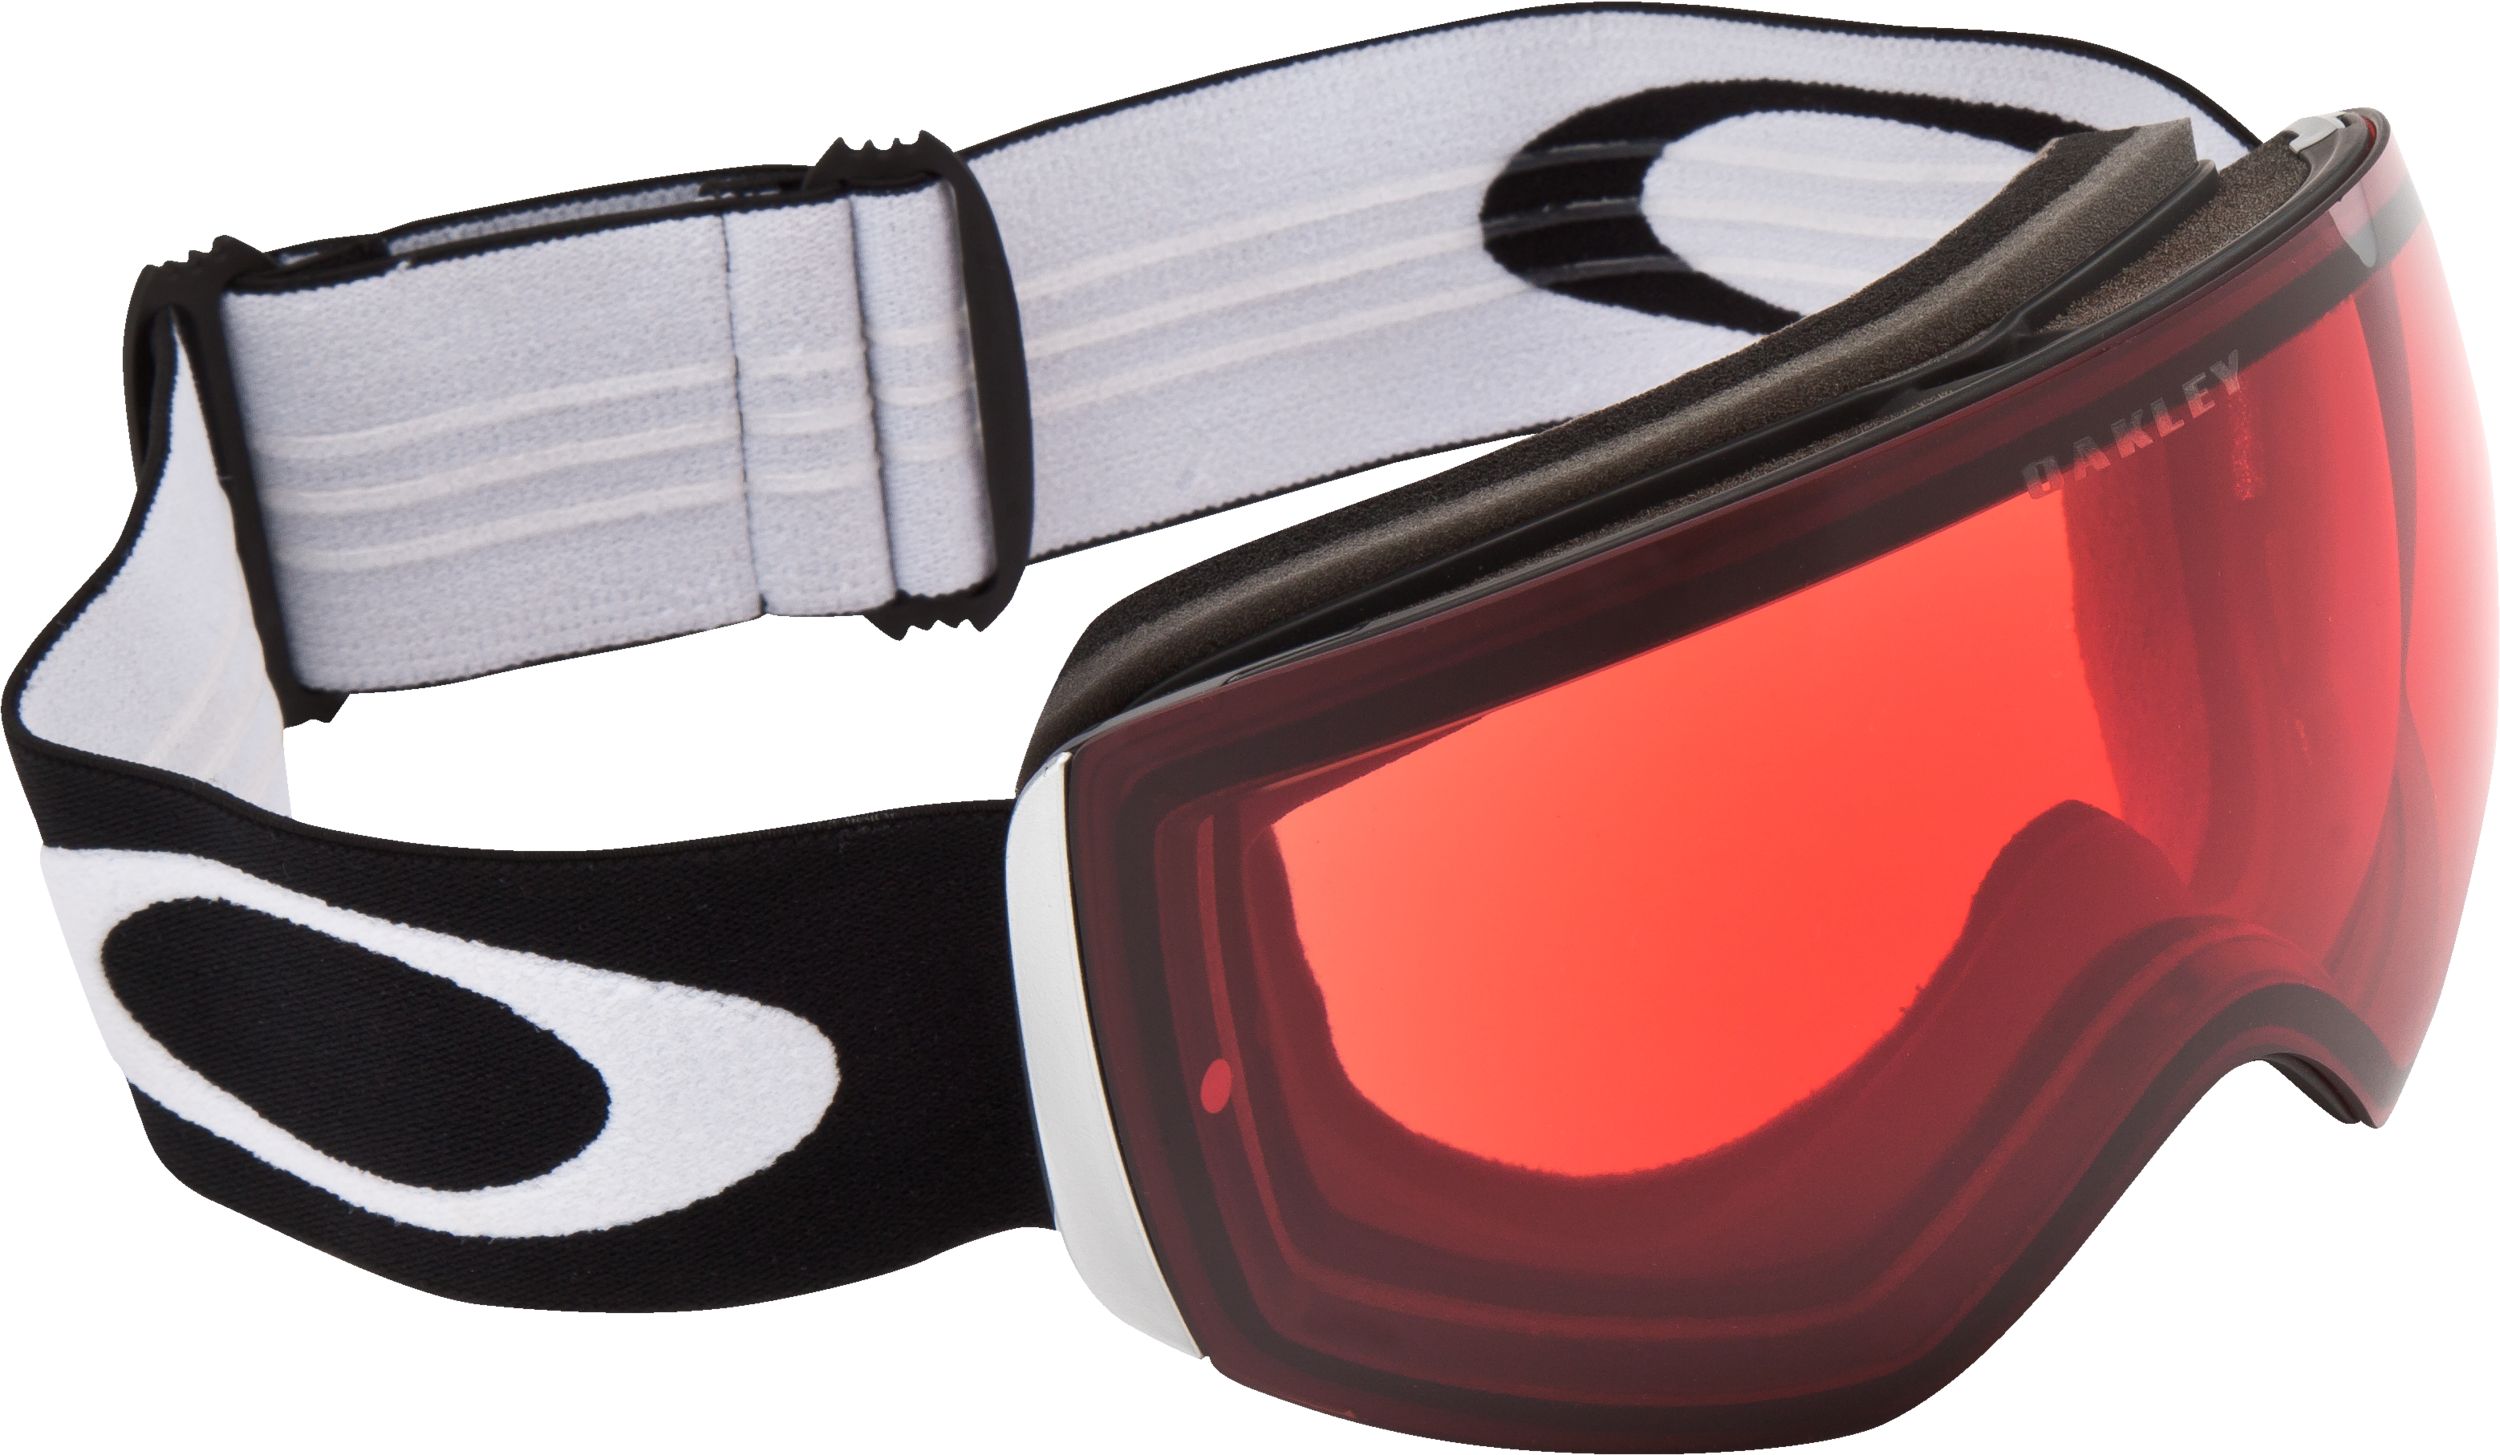 Oakley Flight Deck Ski & Snowboard Goggles with Prizm Rose Lens 2017/18 - Matte Black